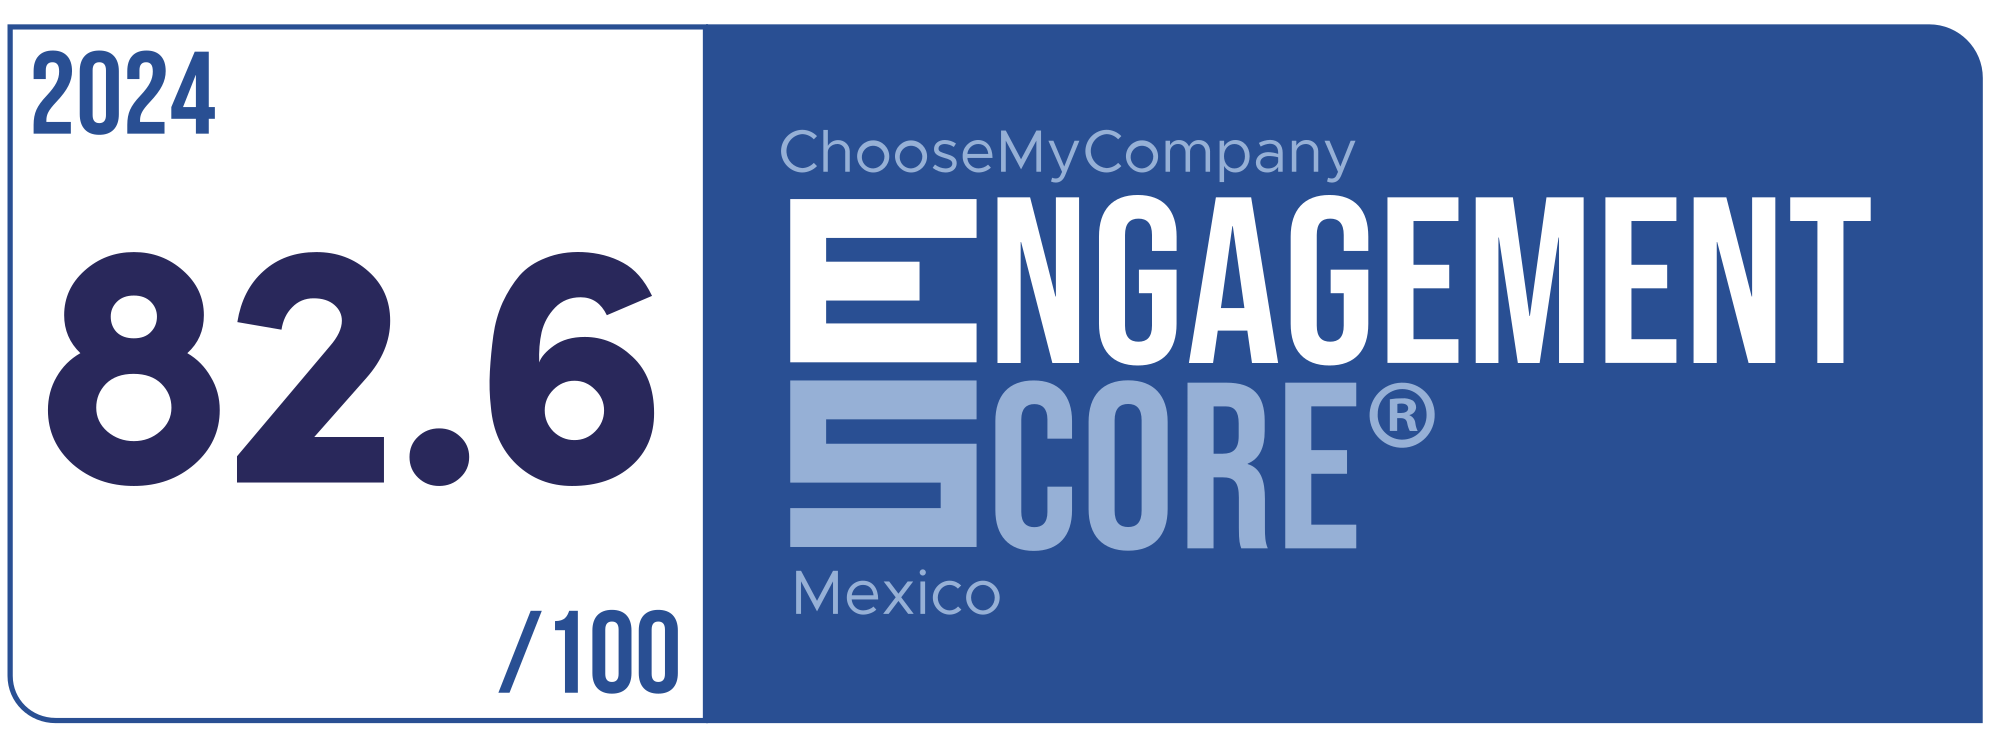 Label Engagement Score 2024 Mexico